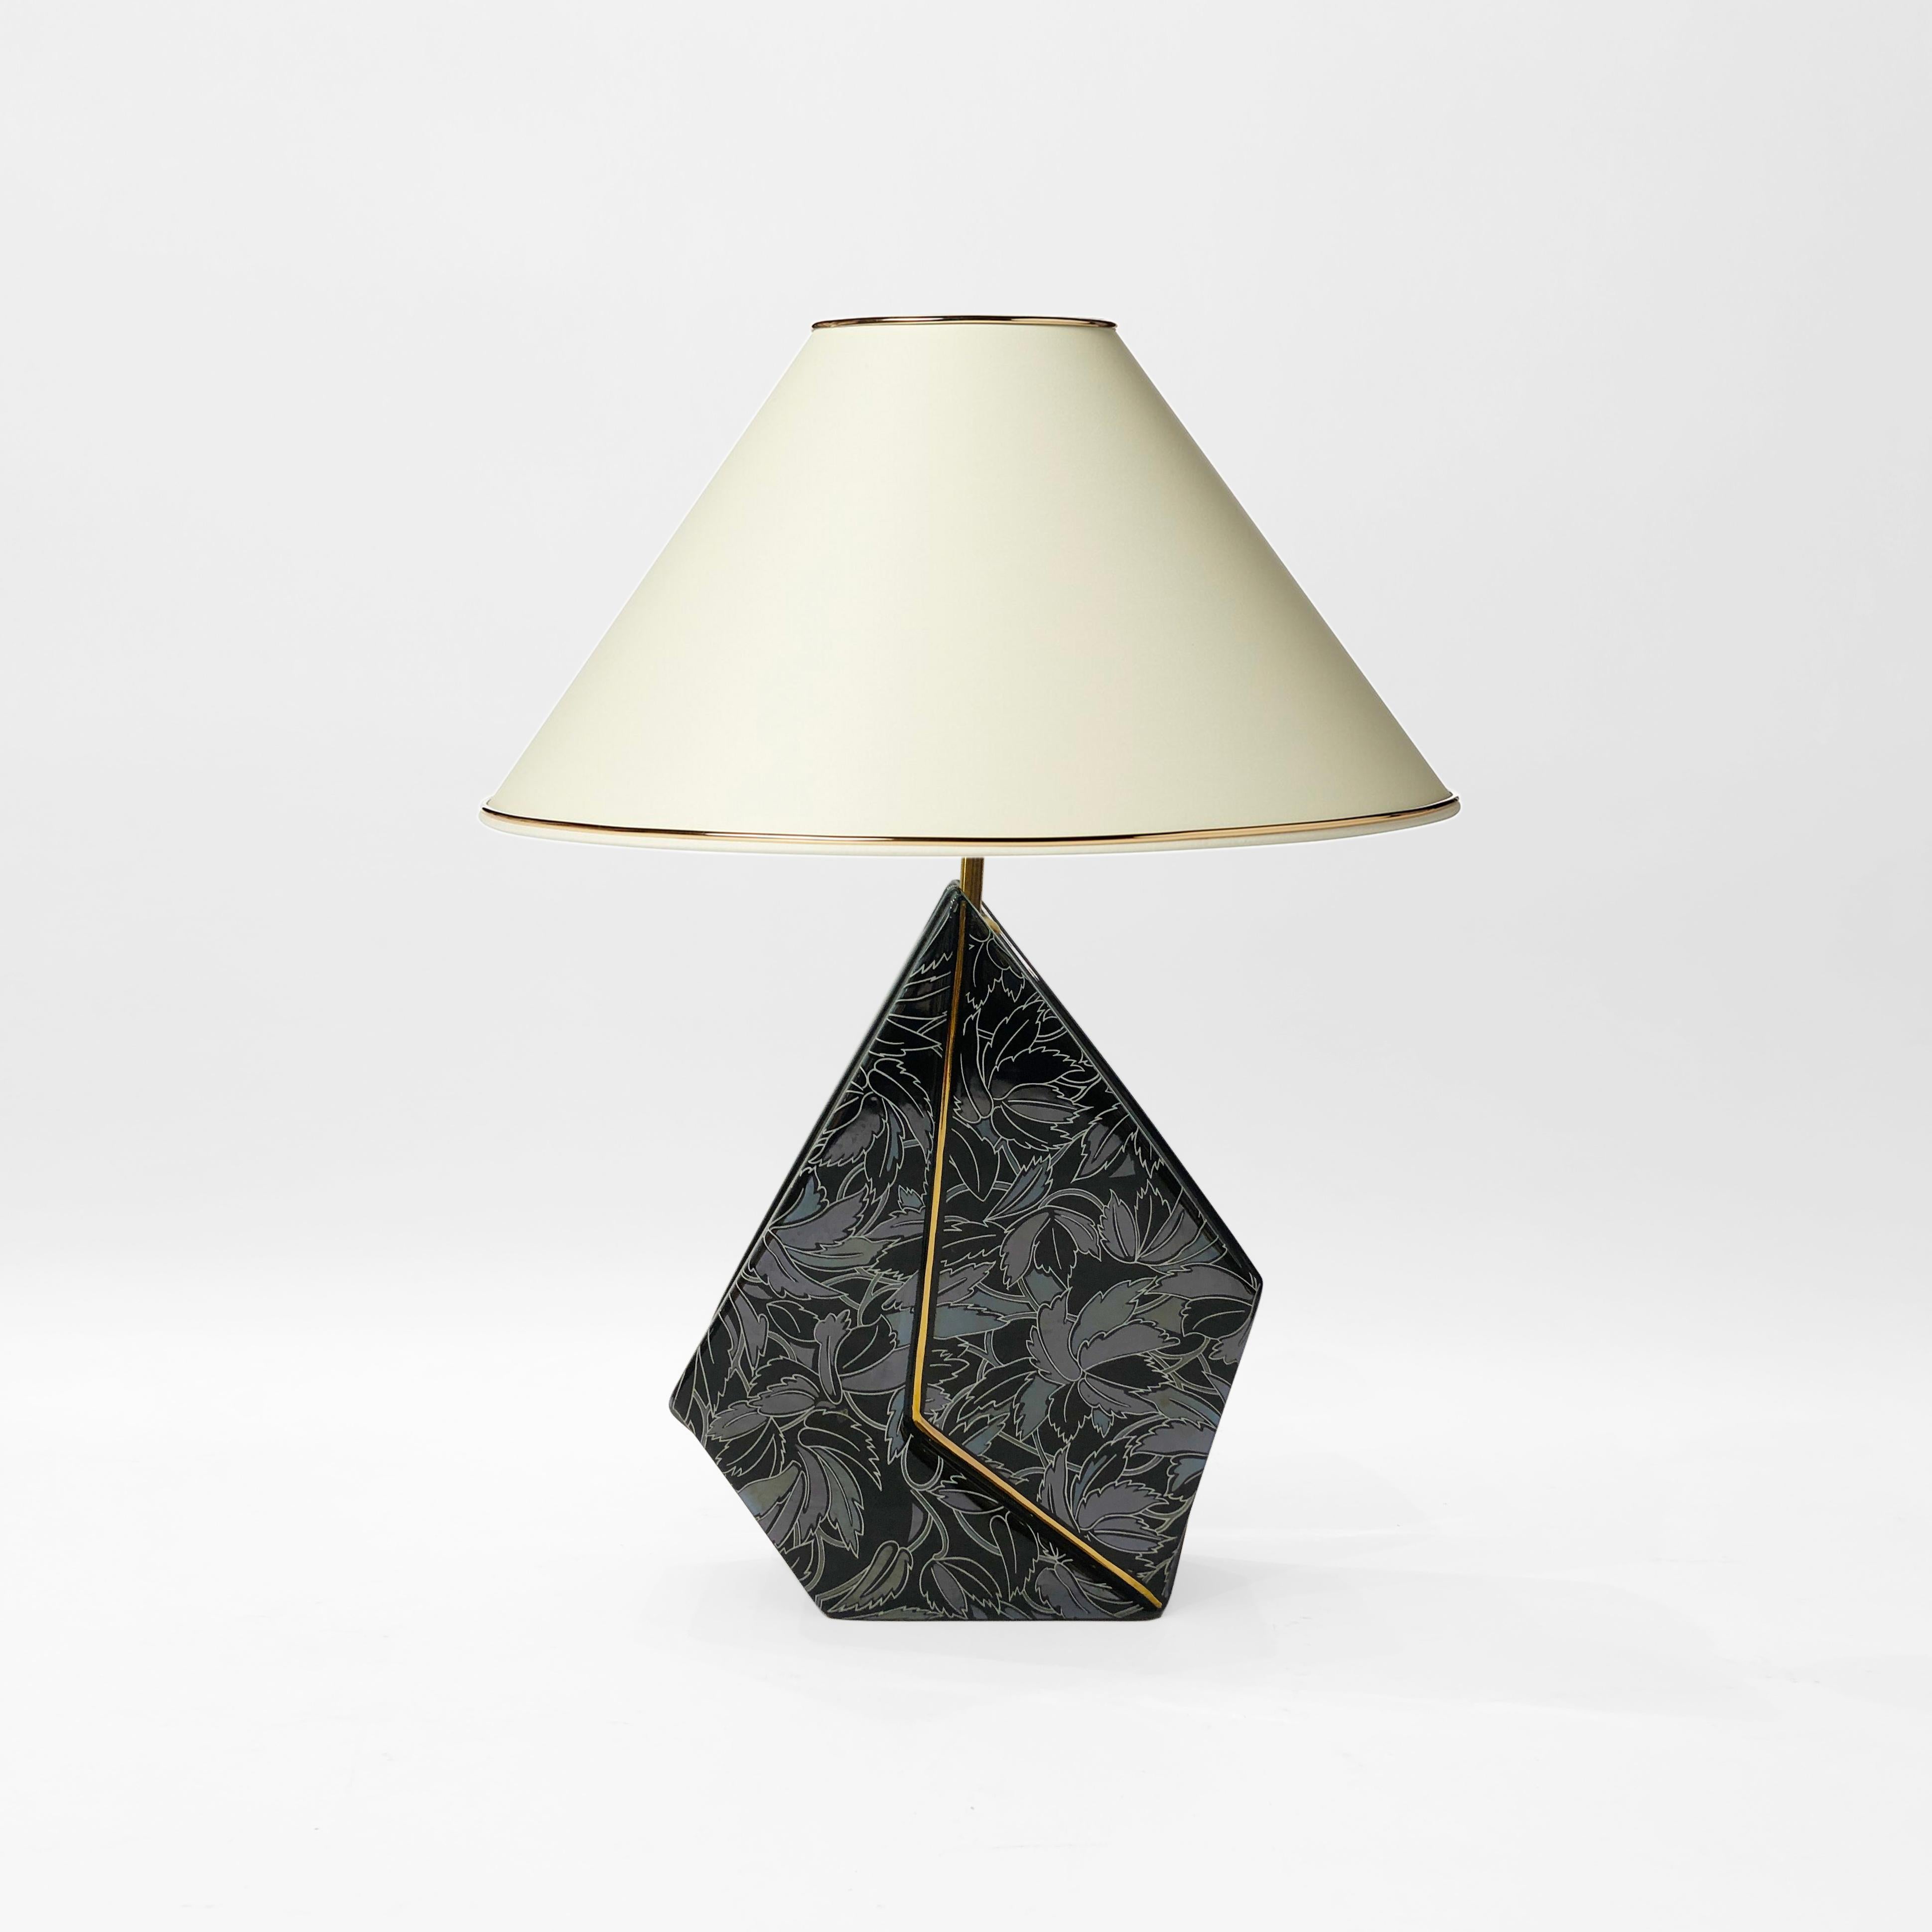 Une lampe de table géométrique, réalisée en céramique émaillée, et finie avec un motif de feuilles. De forme pentagonale irrégulière, cette pièce est dotée d'une bande de laiton saillante qui traverse le milieu jusqu'au raccord de l'ampoule, créant